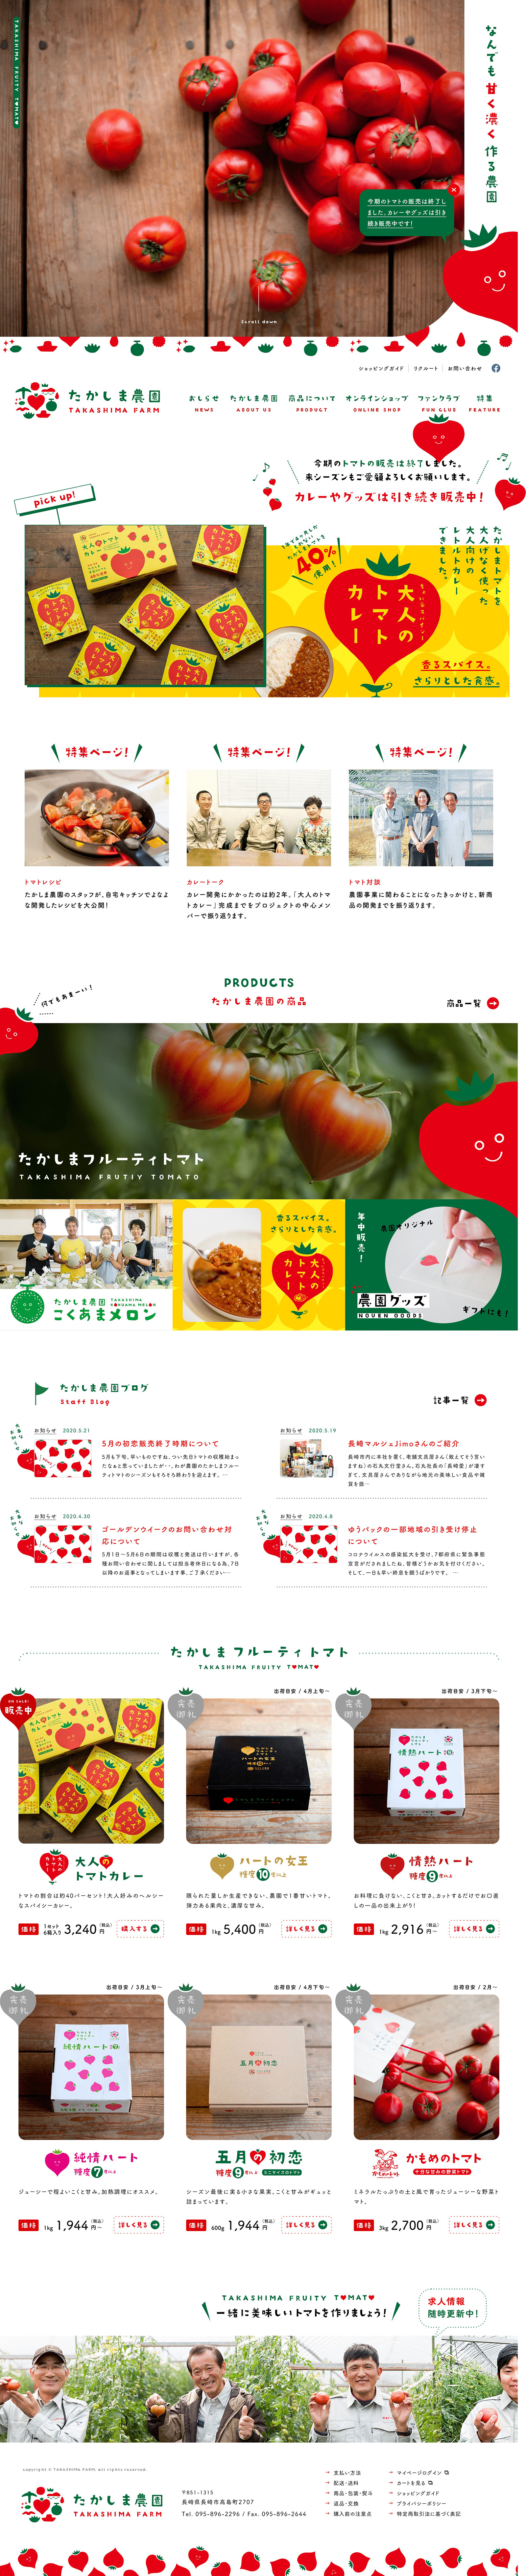 高岛番茄农场网站设计